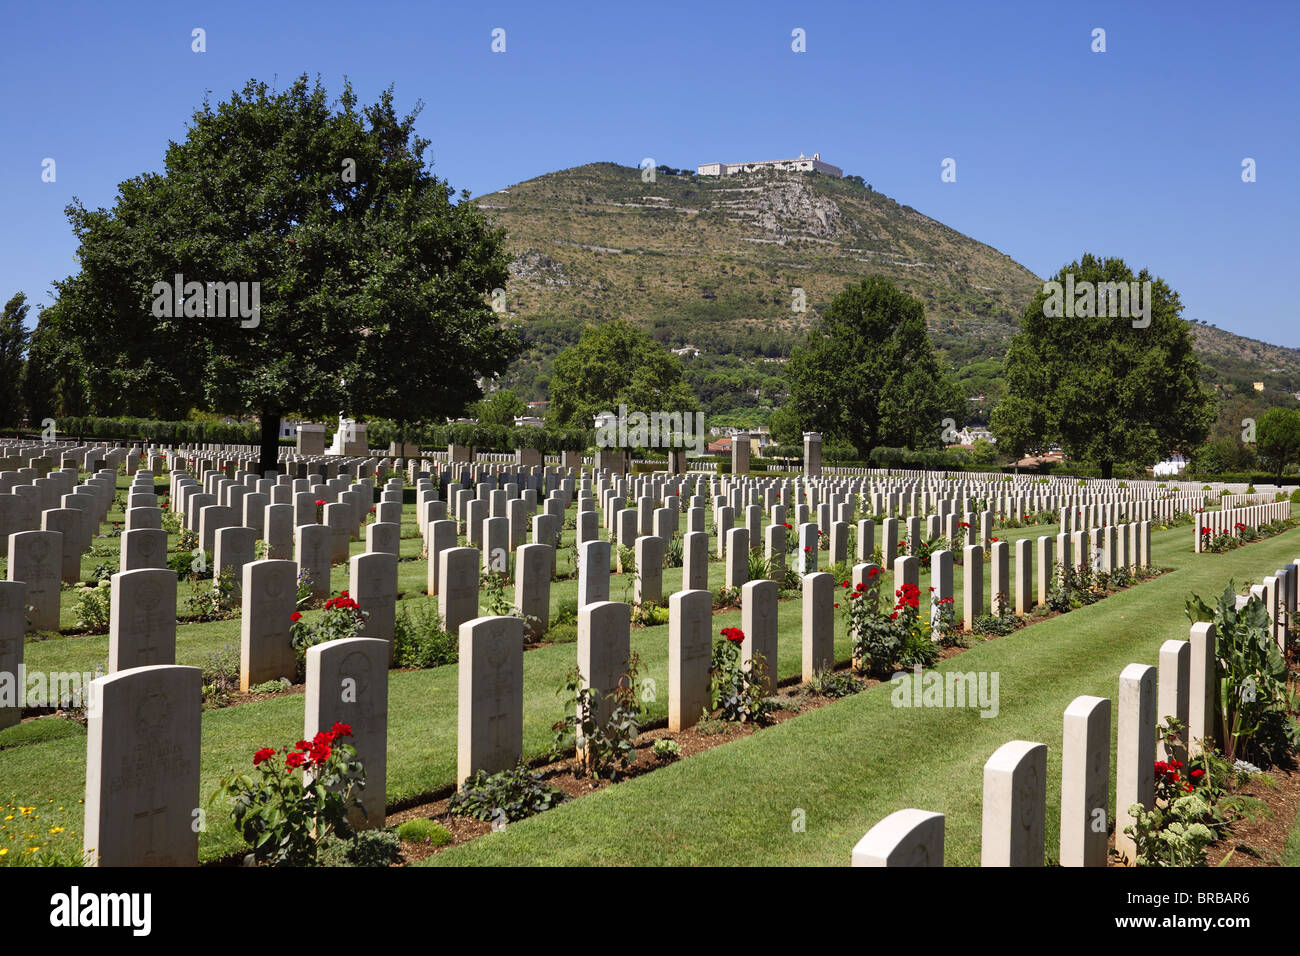 Le cimetière Britannique au pied du Mont-cassin en Italie. Banque D'Images